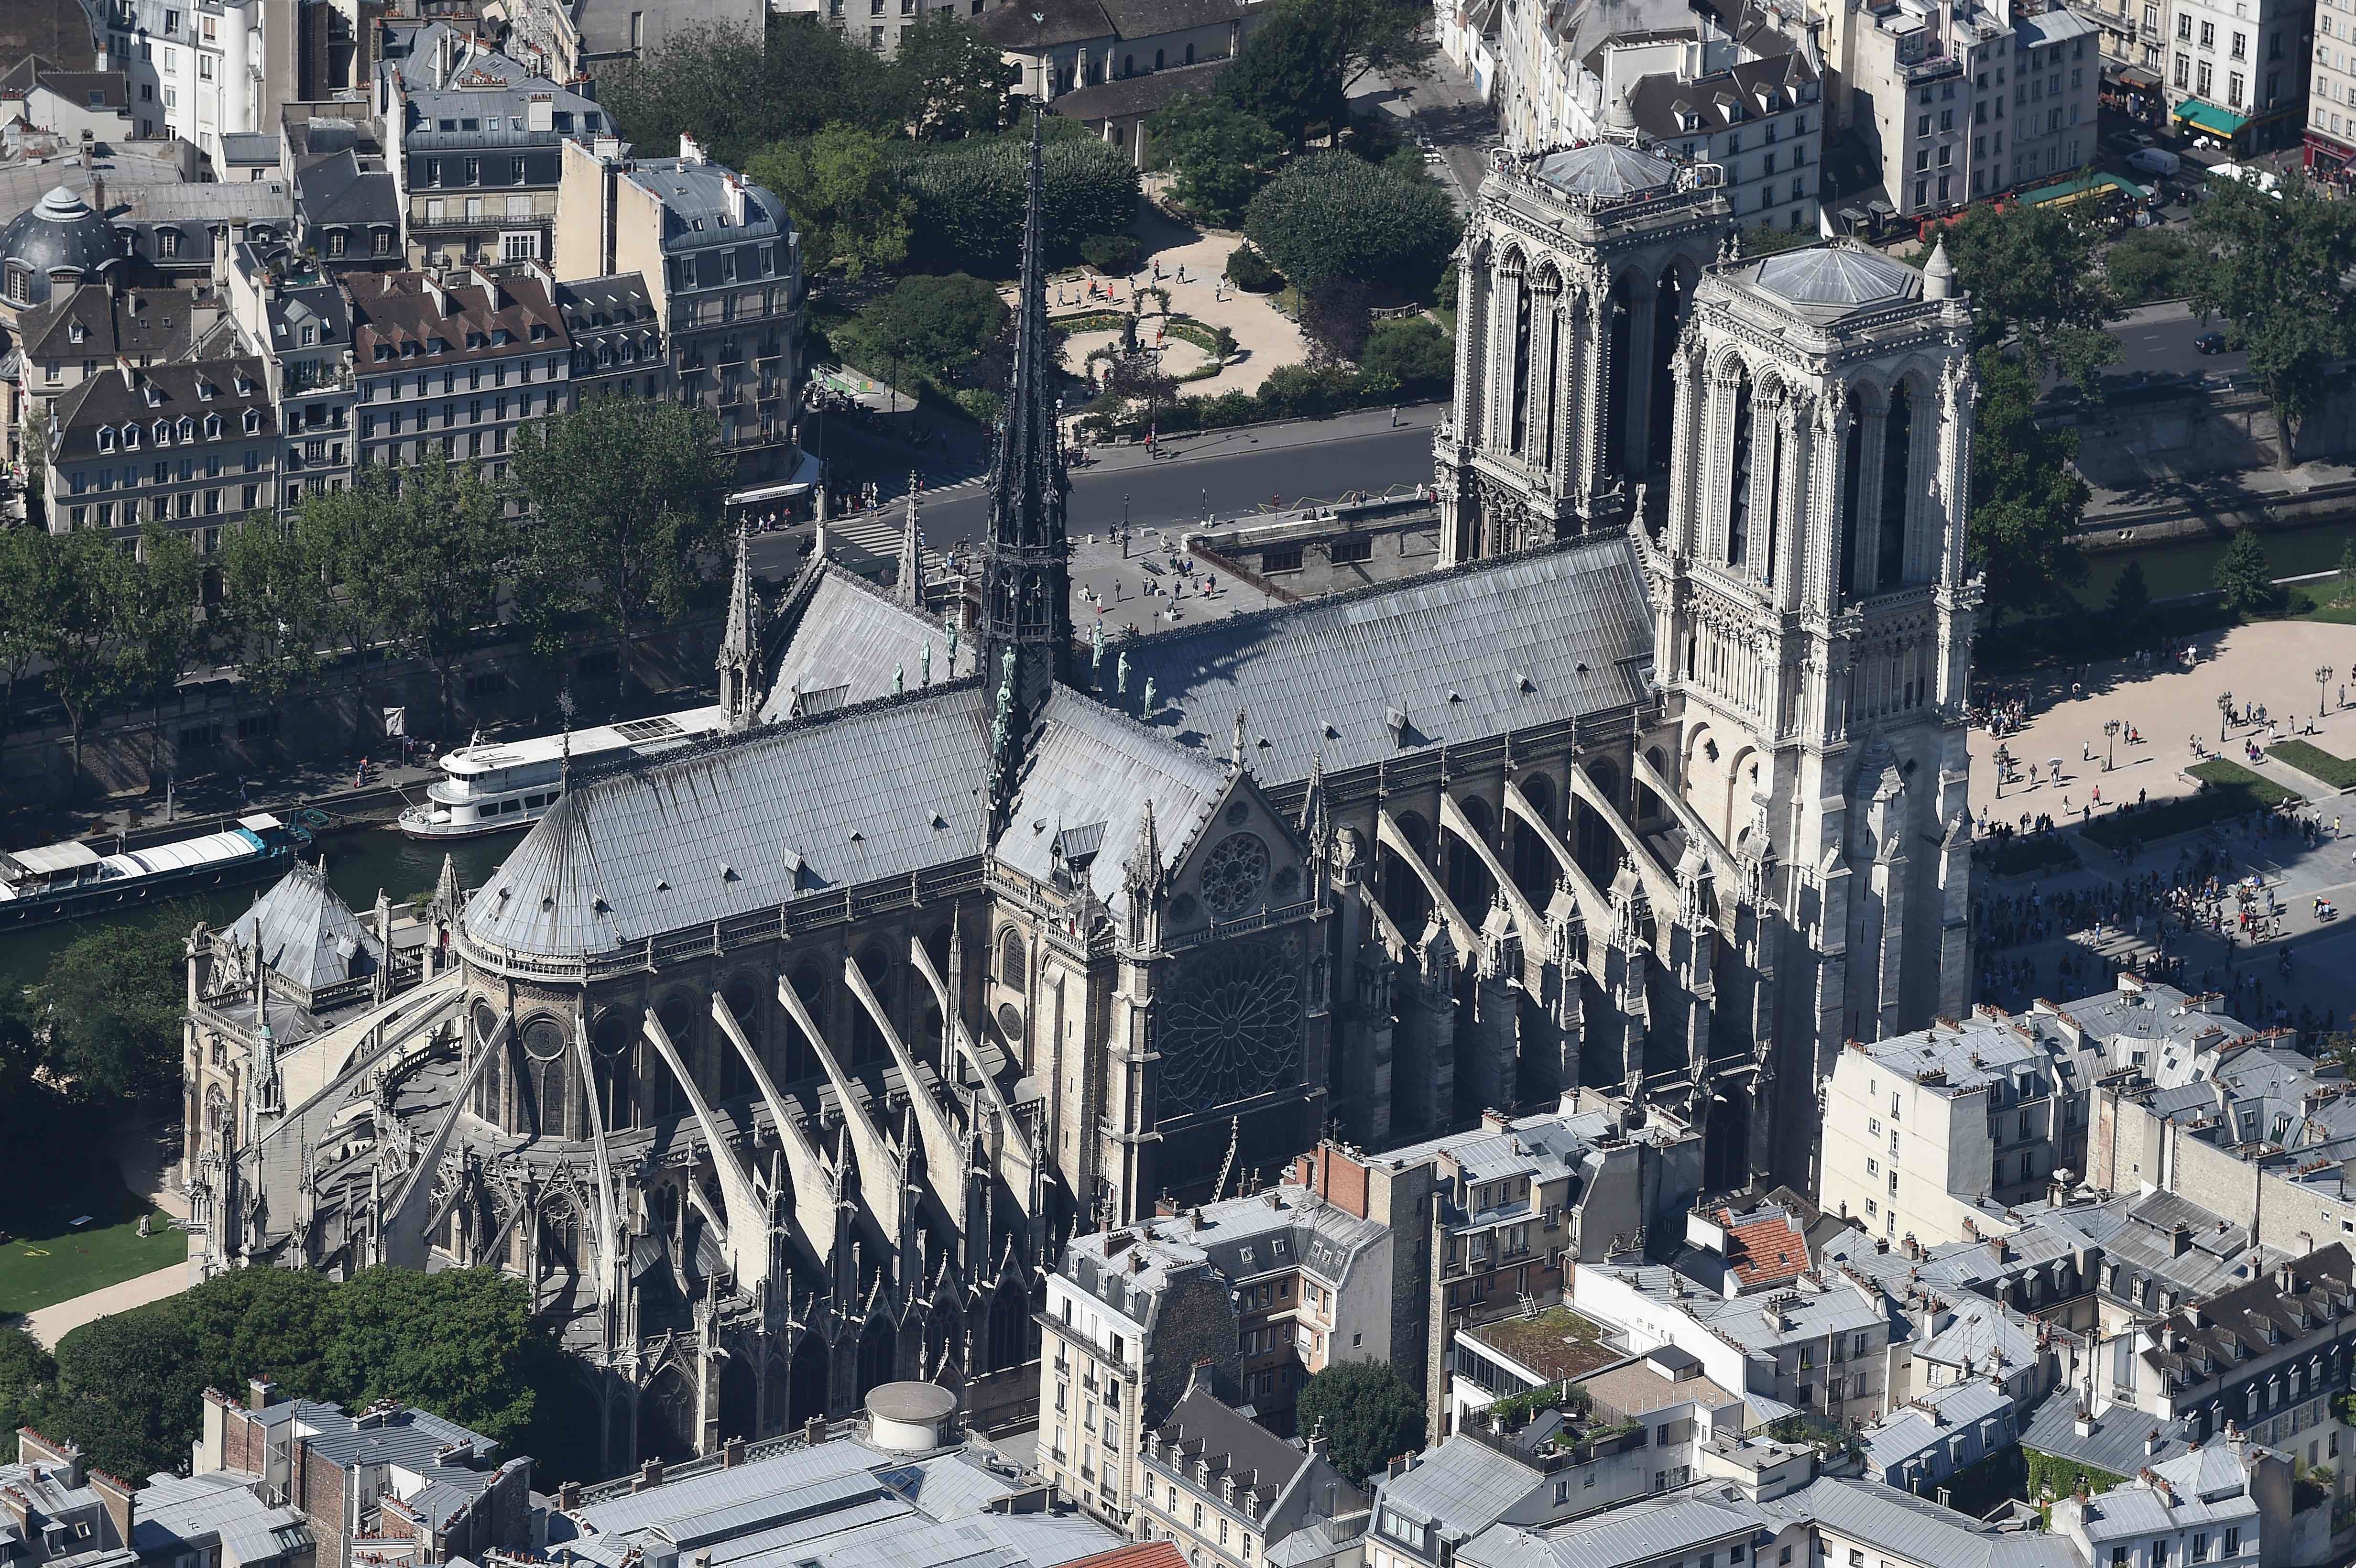 Conozca parte del interior de la Catedral de Notre Dame en París. 